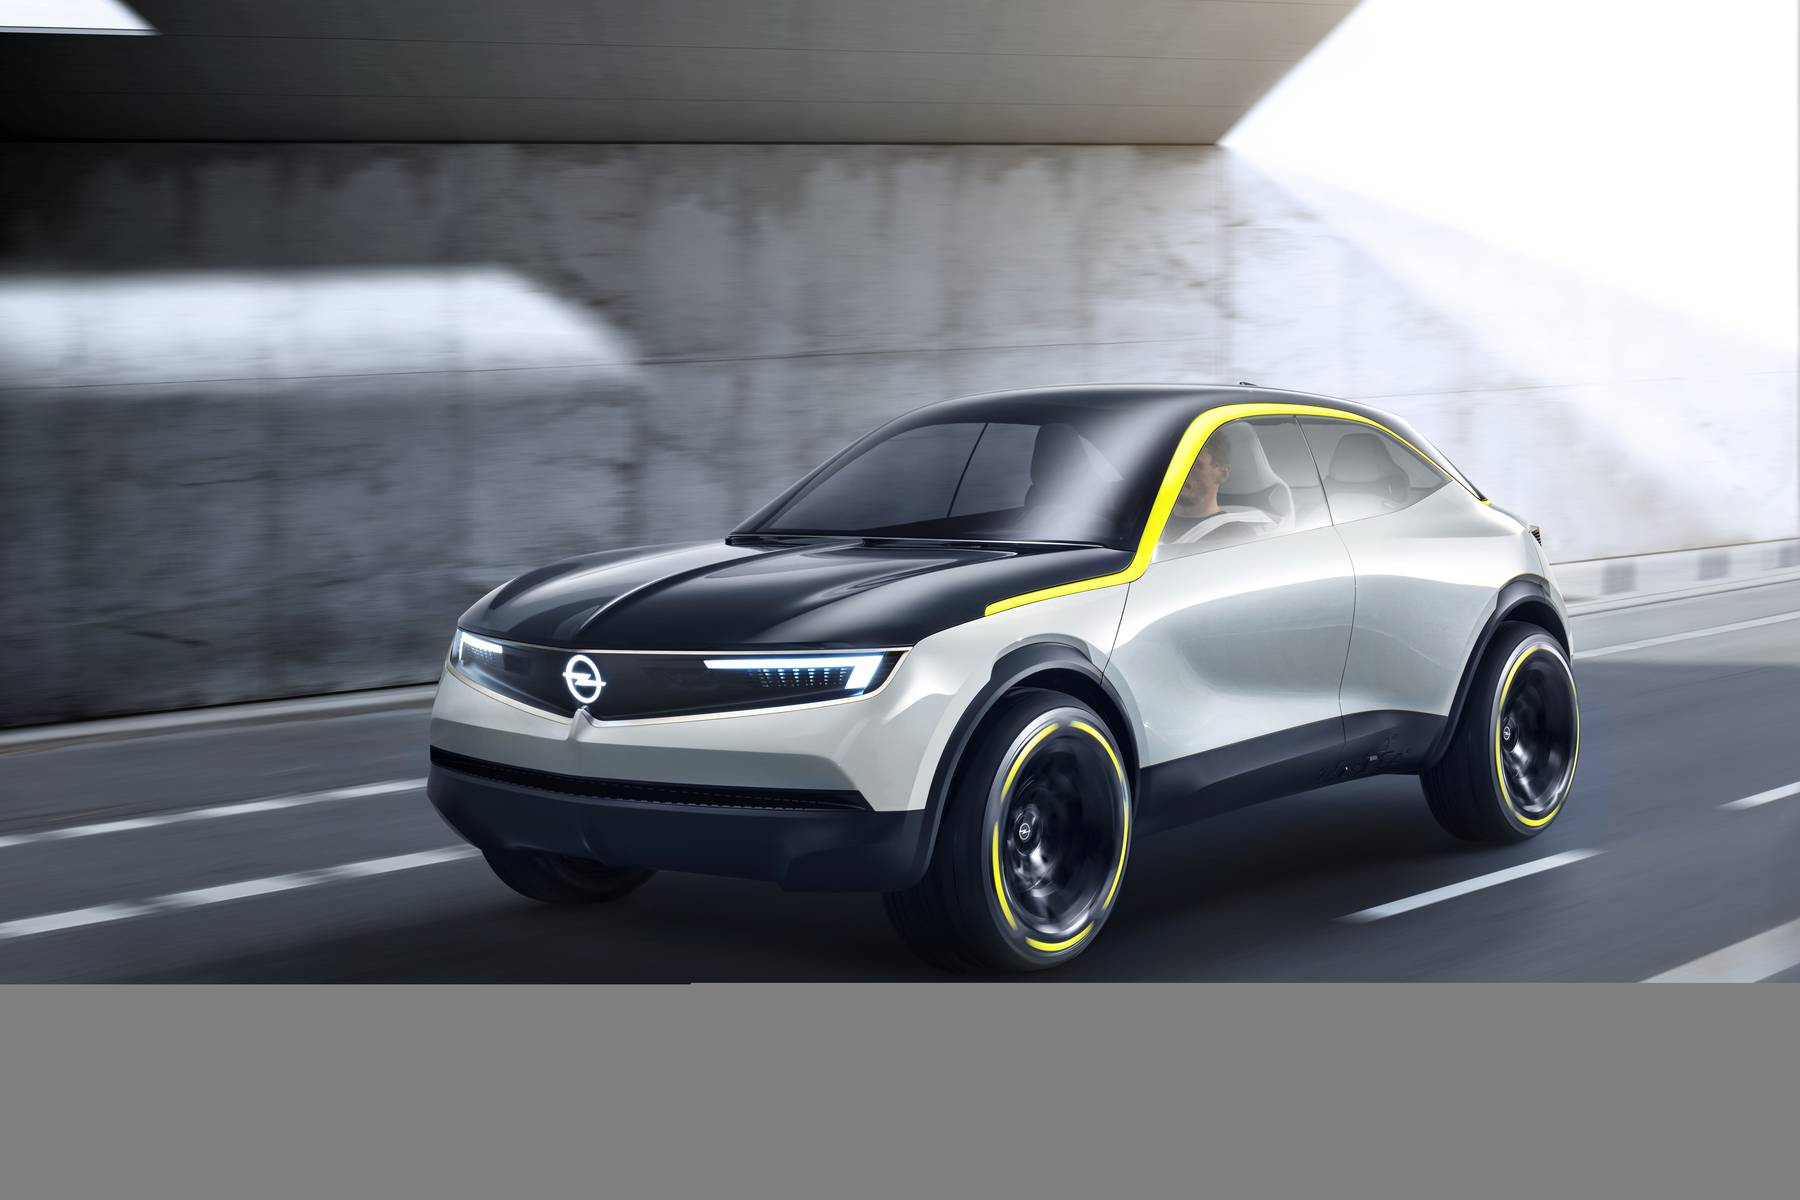 La prossima Opel Corsa sarà elettrica. La casa tedesca ha annunciato la sua  strategia a zero emissioni - GreenMotorsport